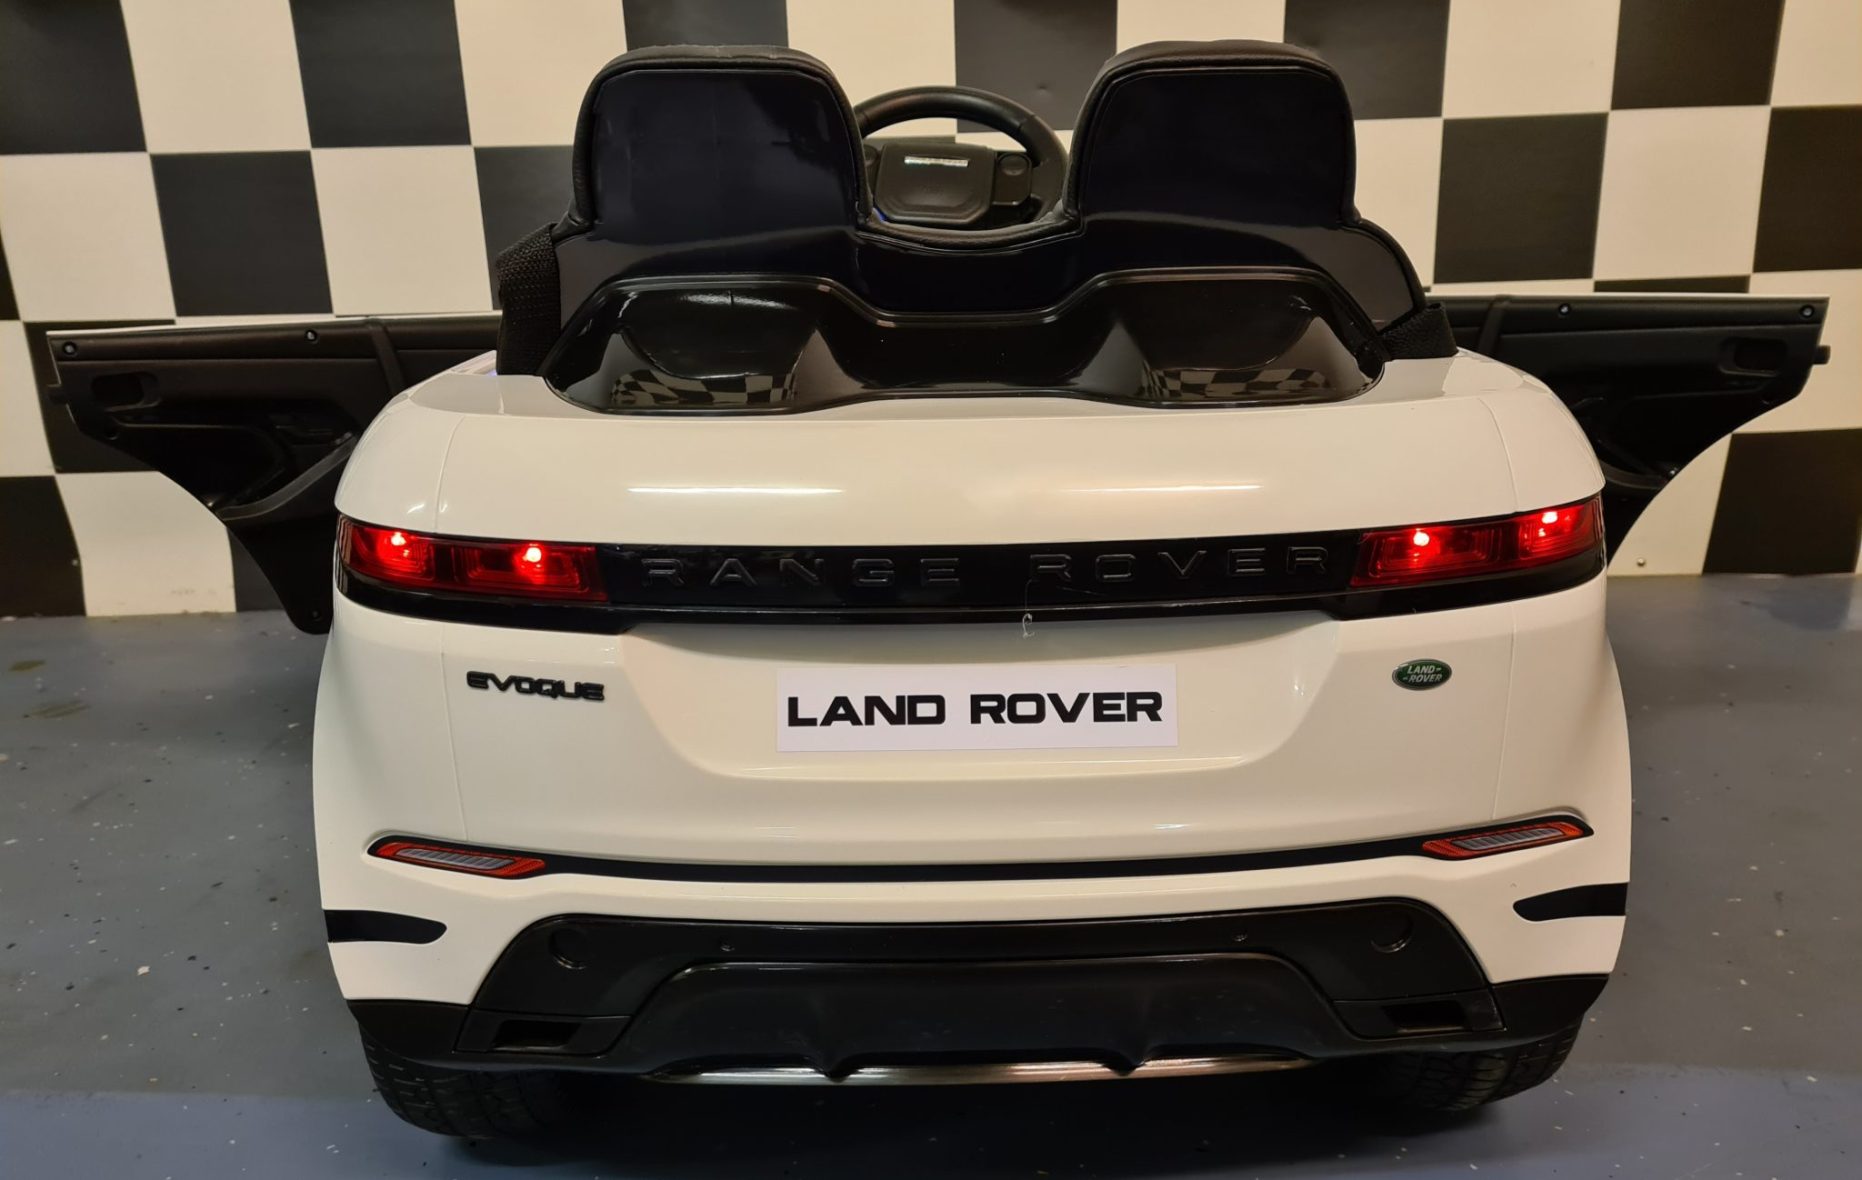 Range-rover-Evoque-speelgoedauto